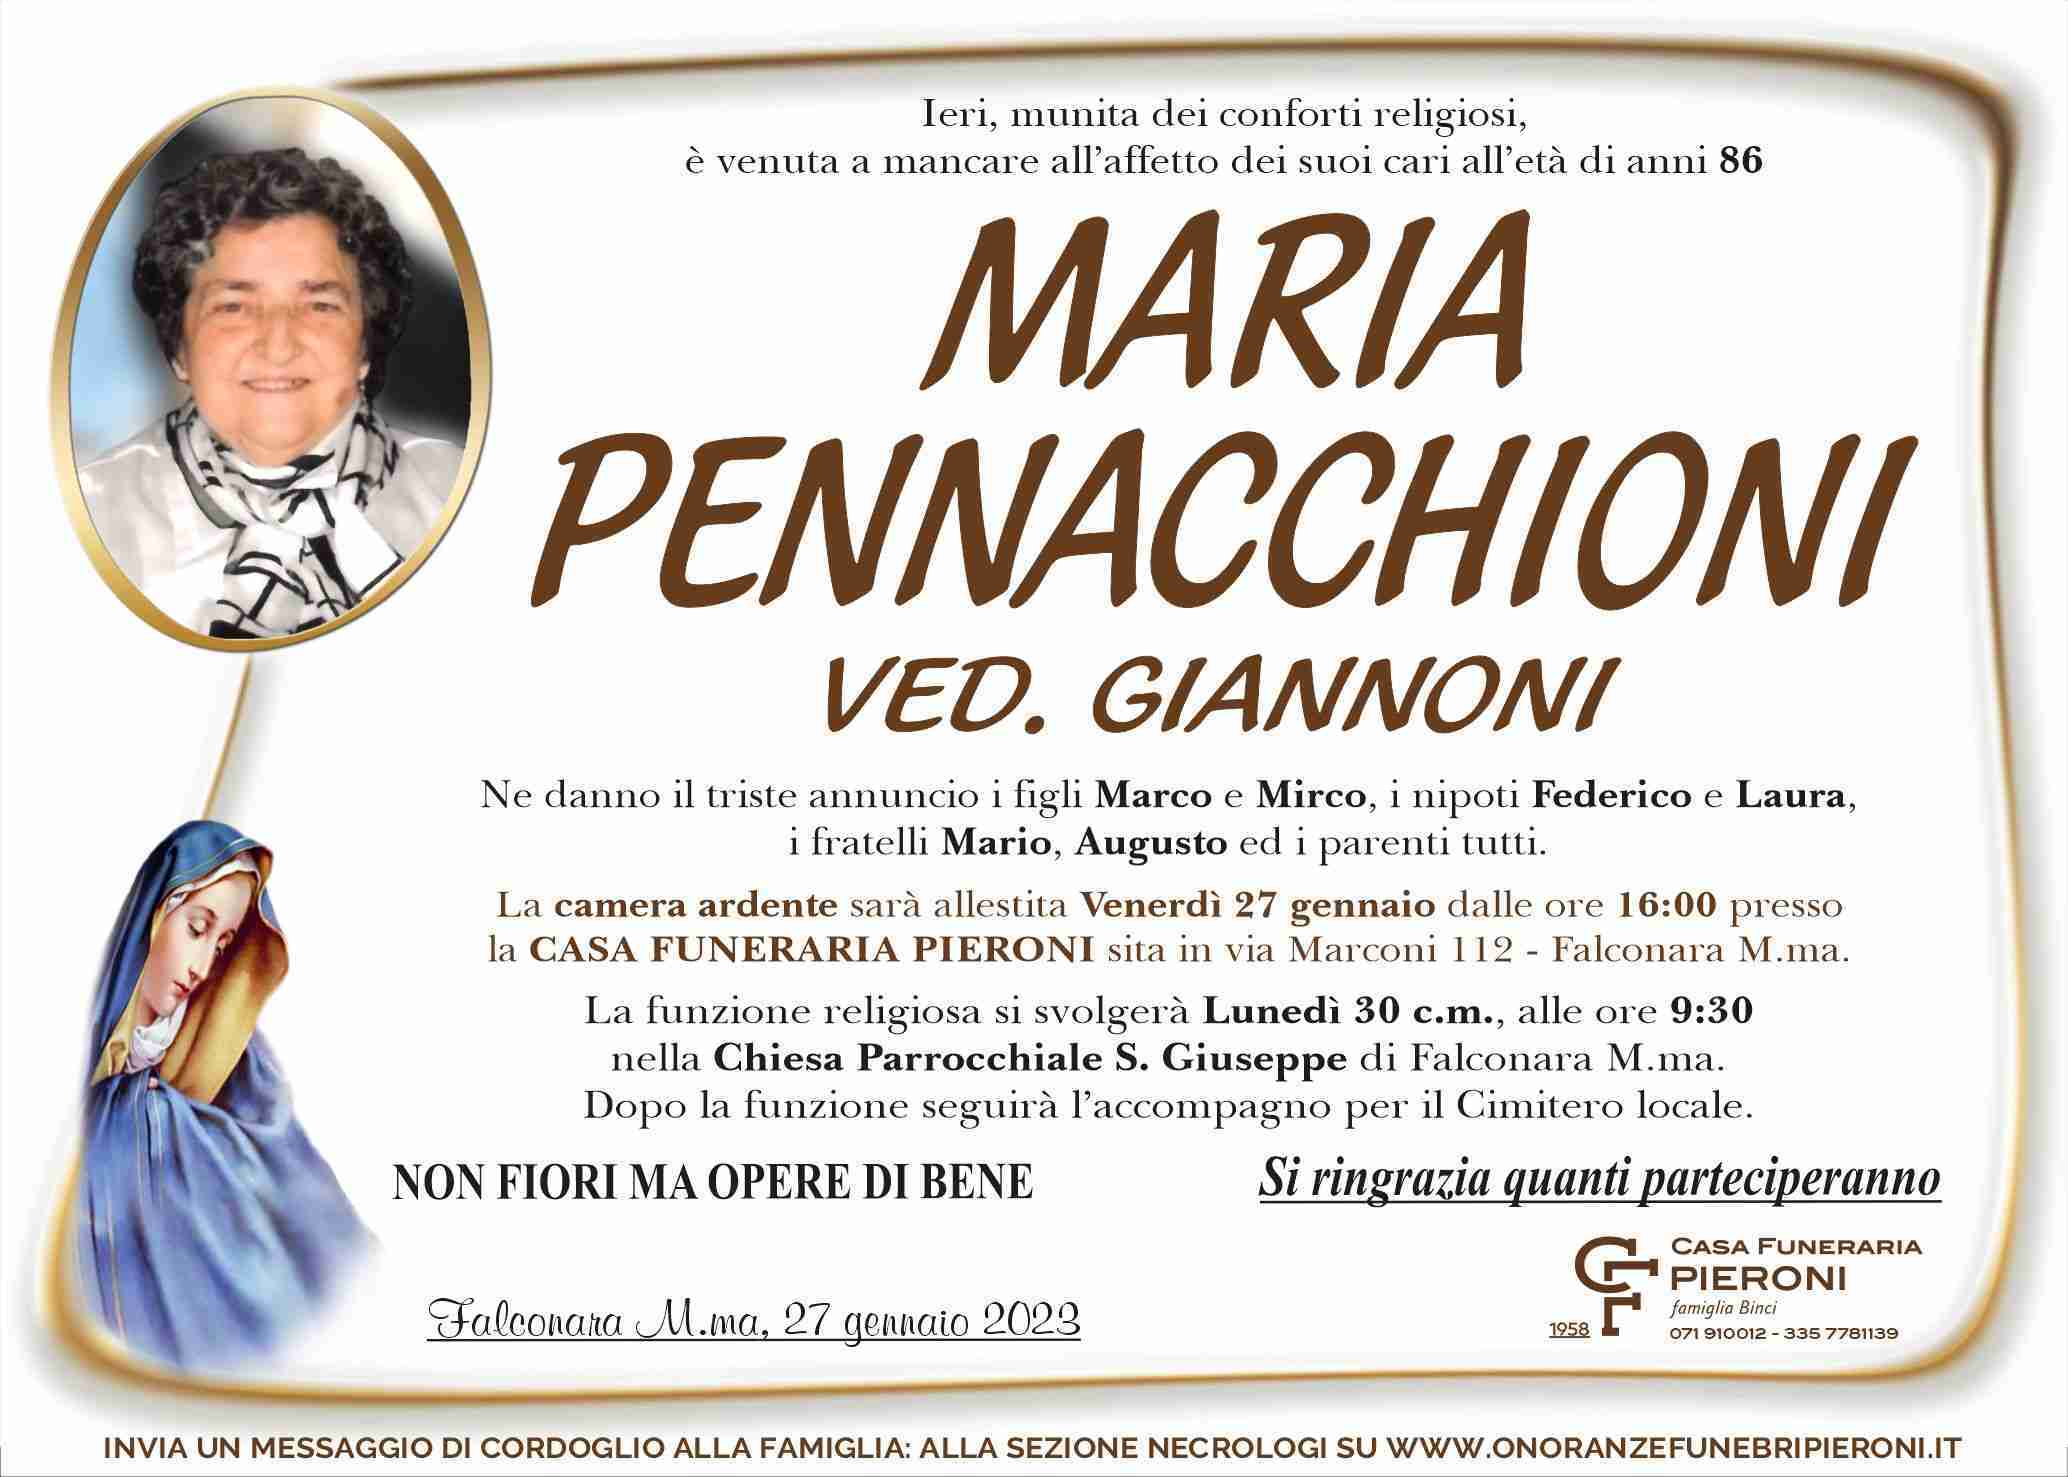 Maria Pennacchioni